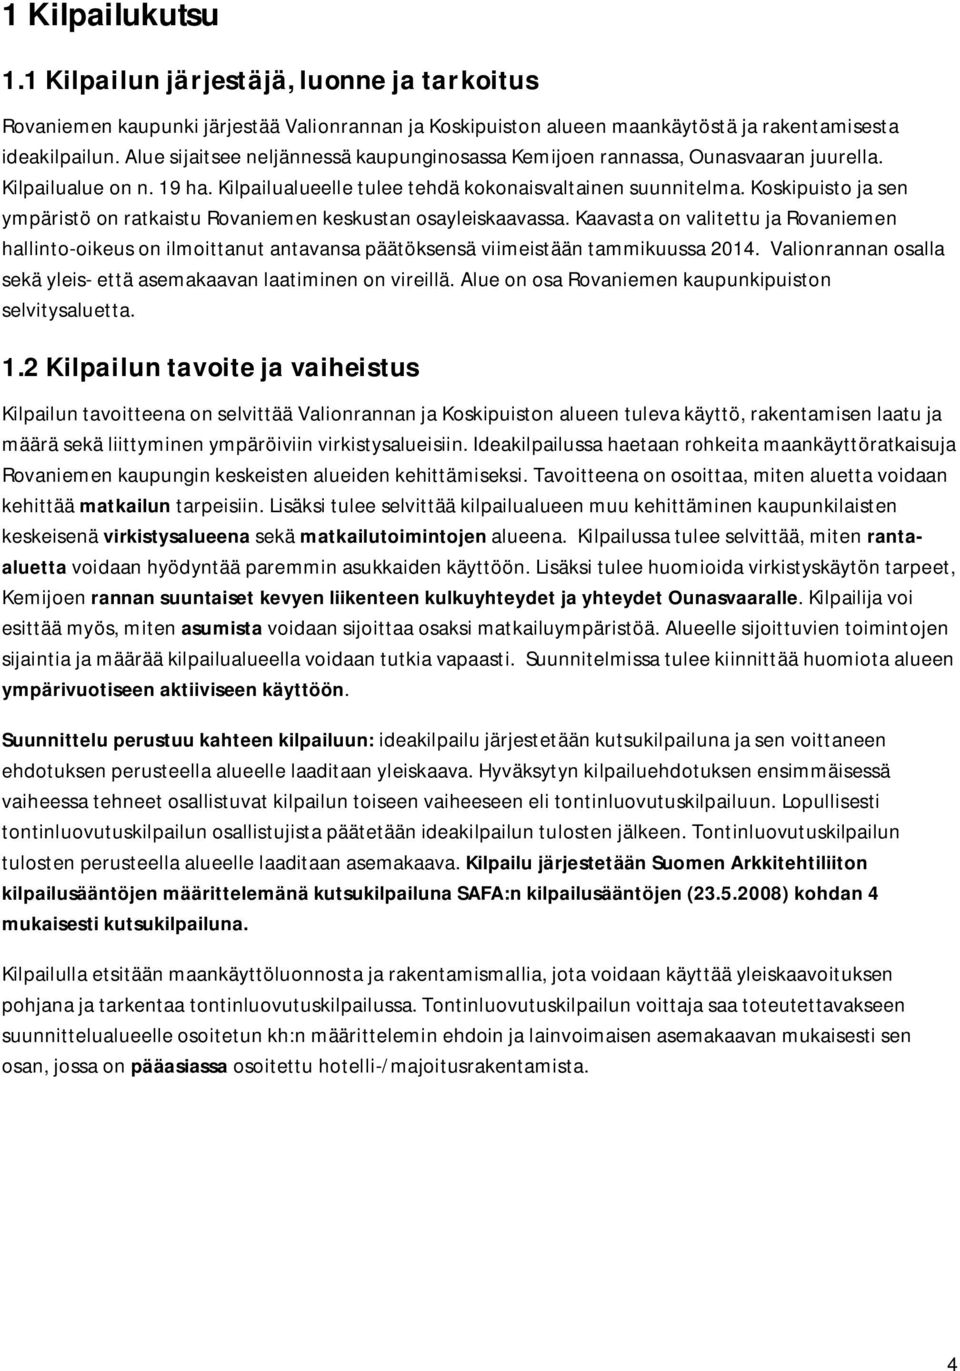 Koskipuisto ja sen ympäristö on ratkaistu Rovaniemen keskustan osayleiskaavassa. Kaavasta on valitettu ja Rovaniemen hallinto-oikeus on ilmoittanut antavansa päätöksensä viimeistään tammikuussa 2014.